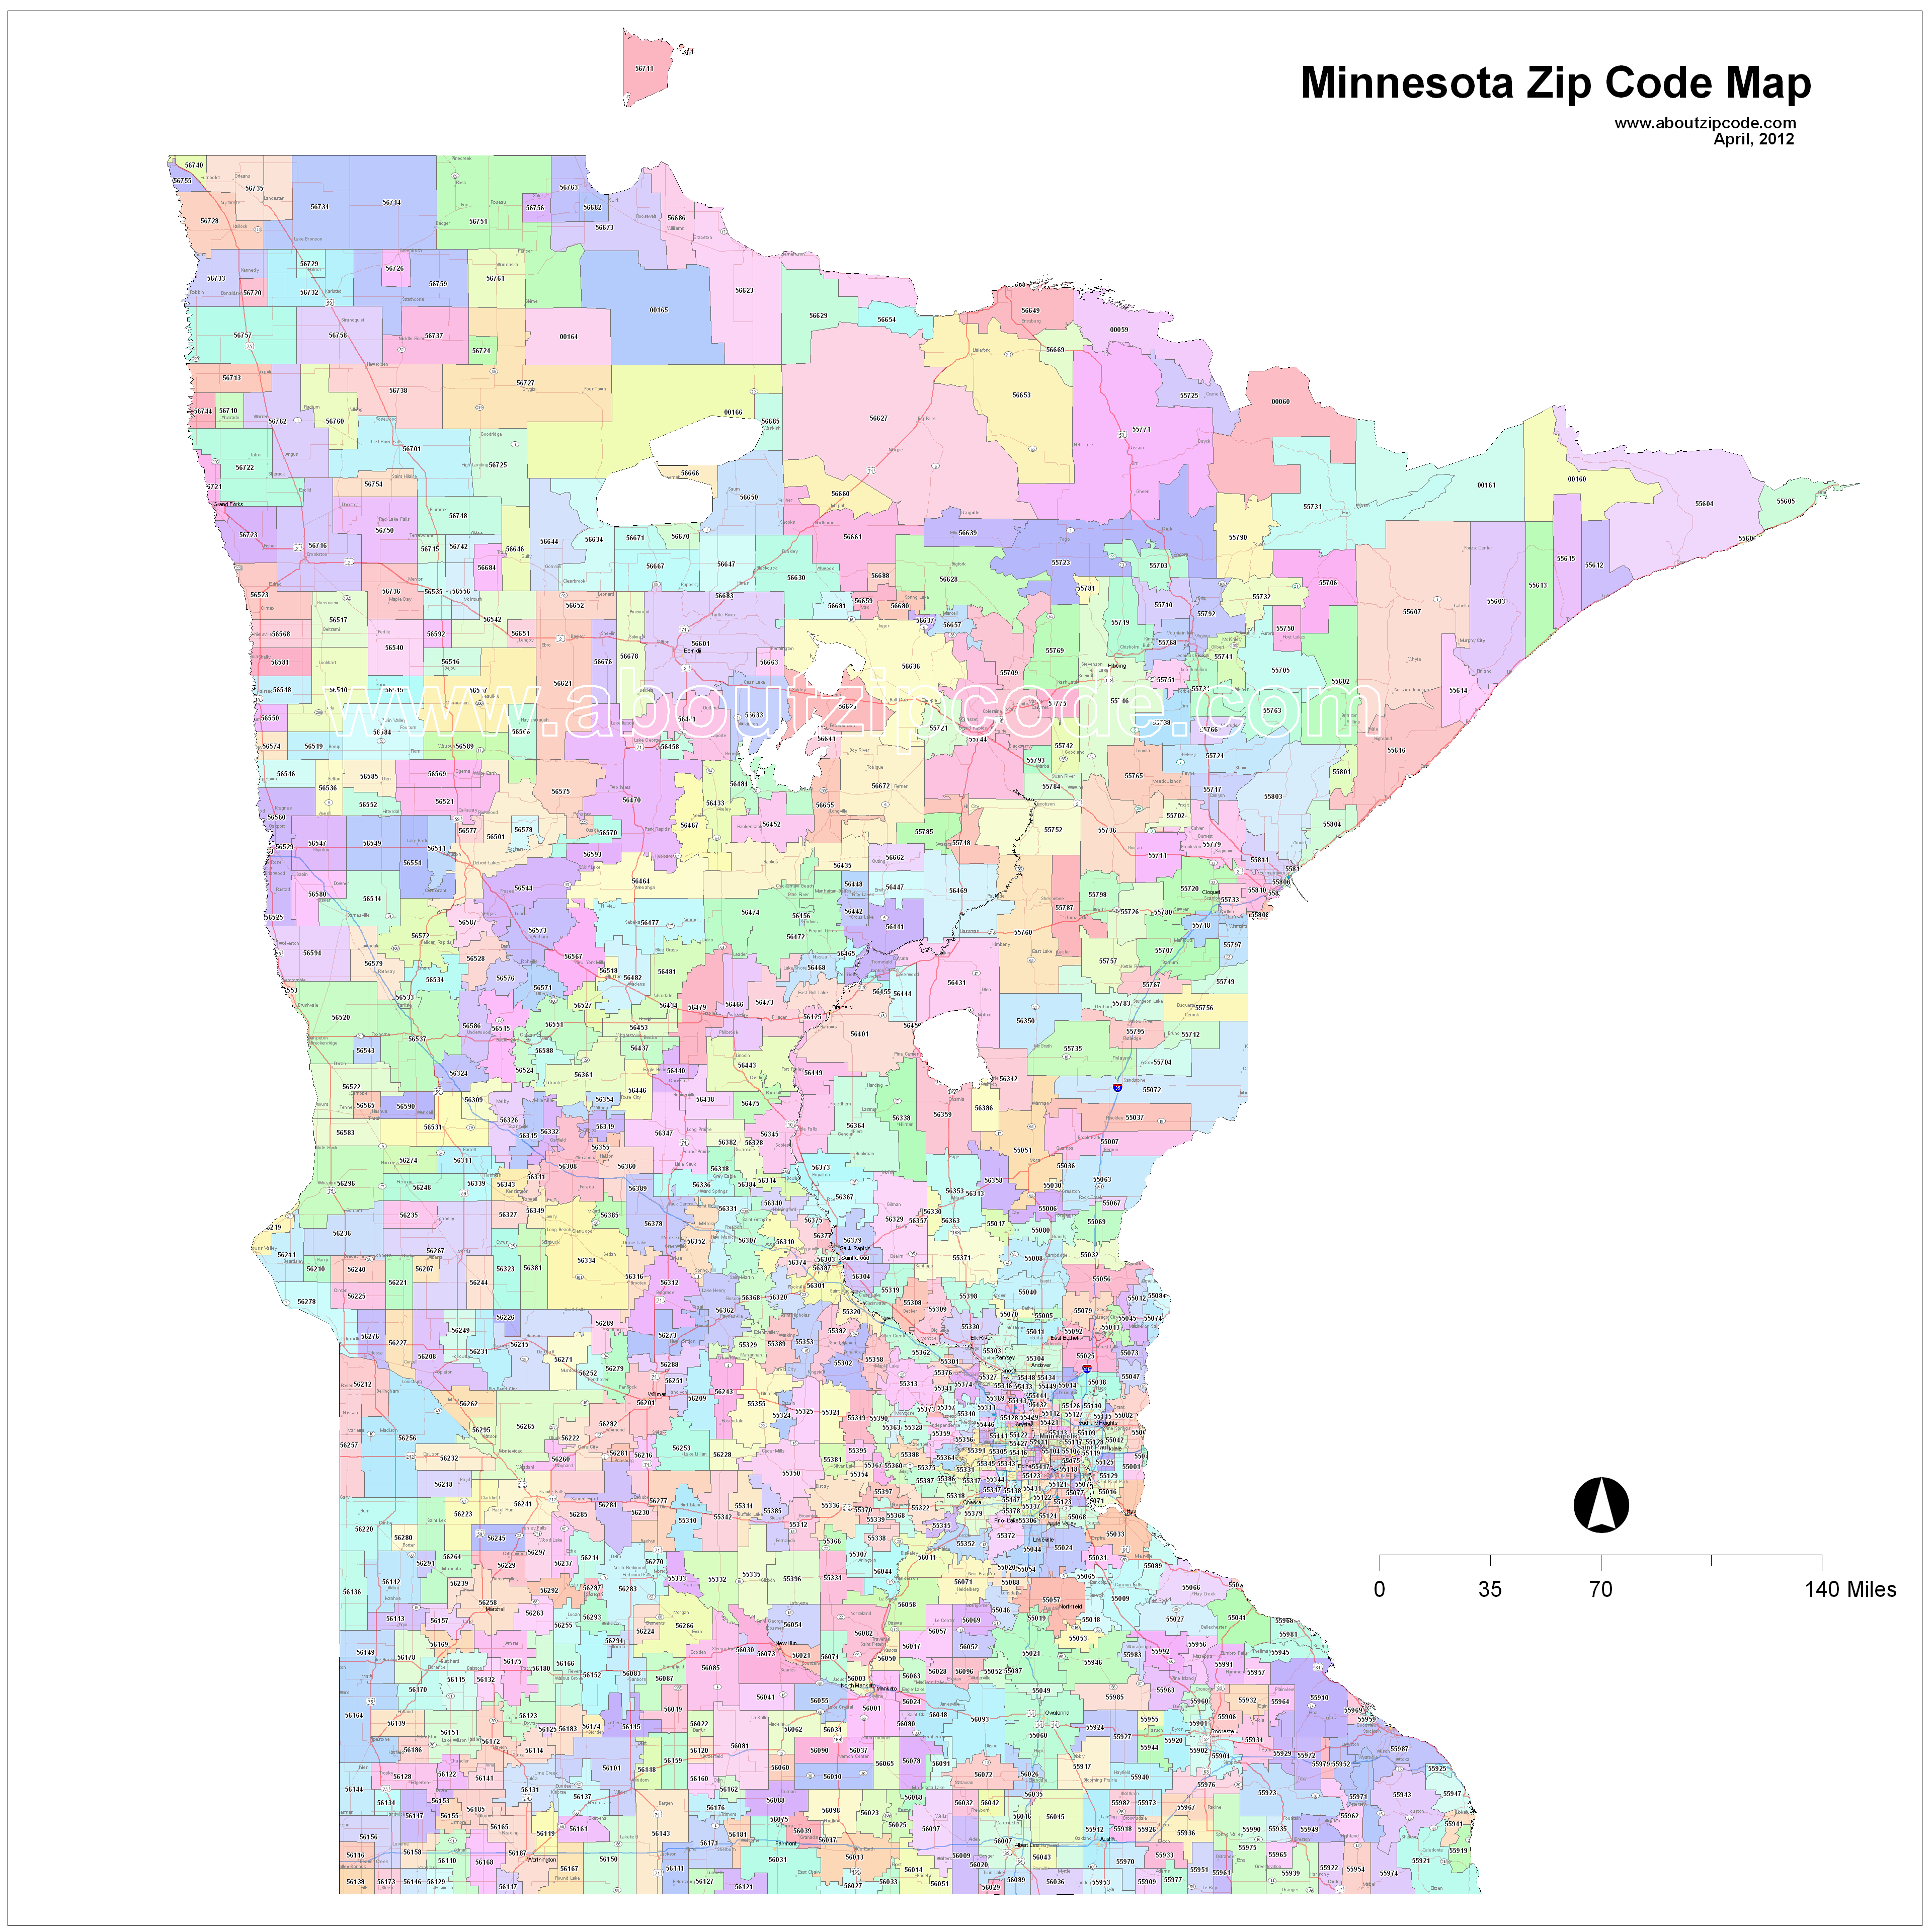 Minnesota Zip Code Maps Free Minnesota Zip Code Maps